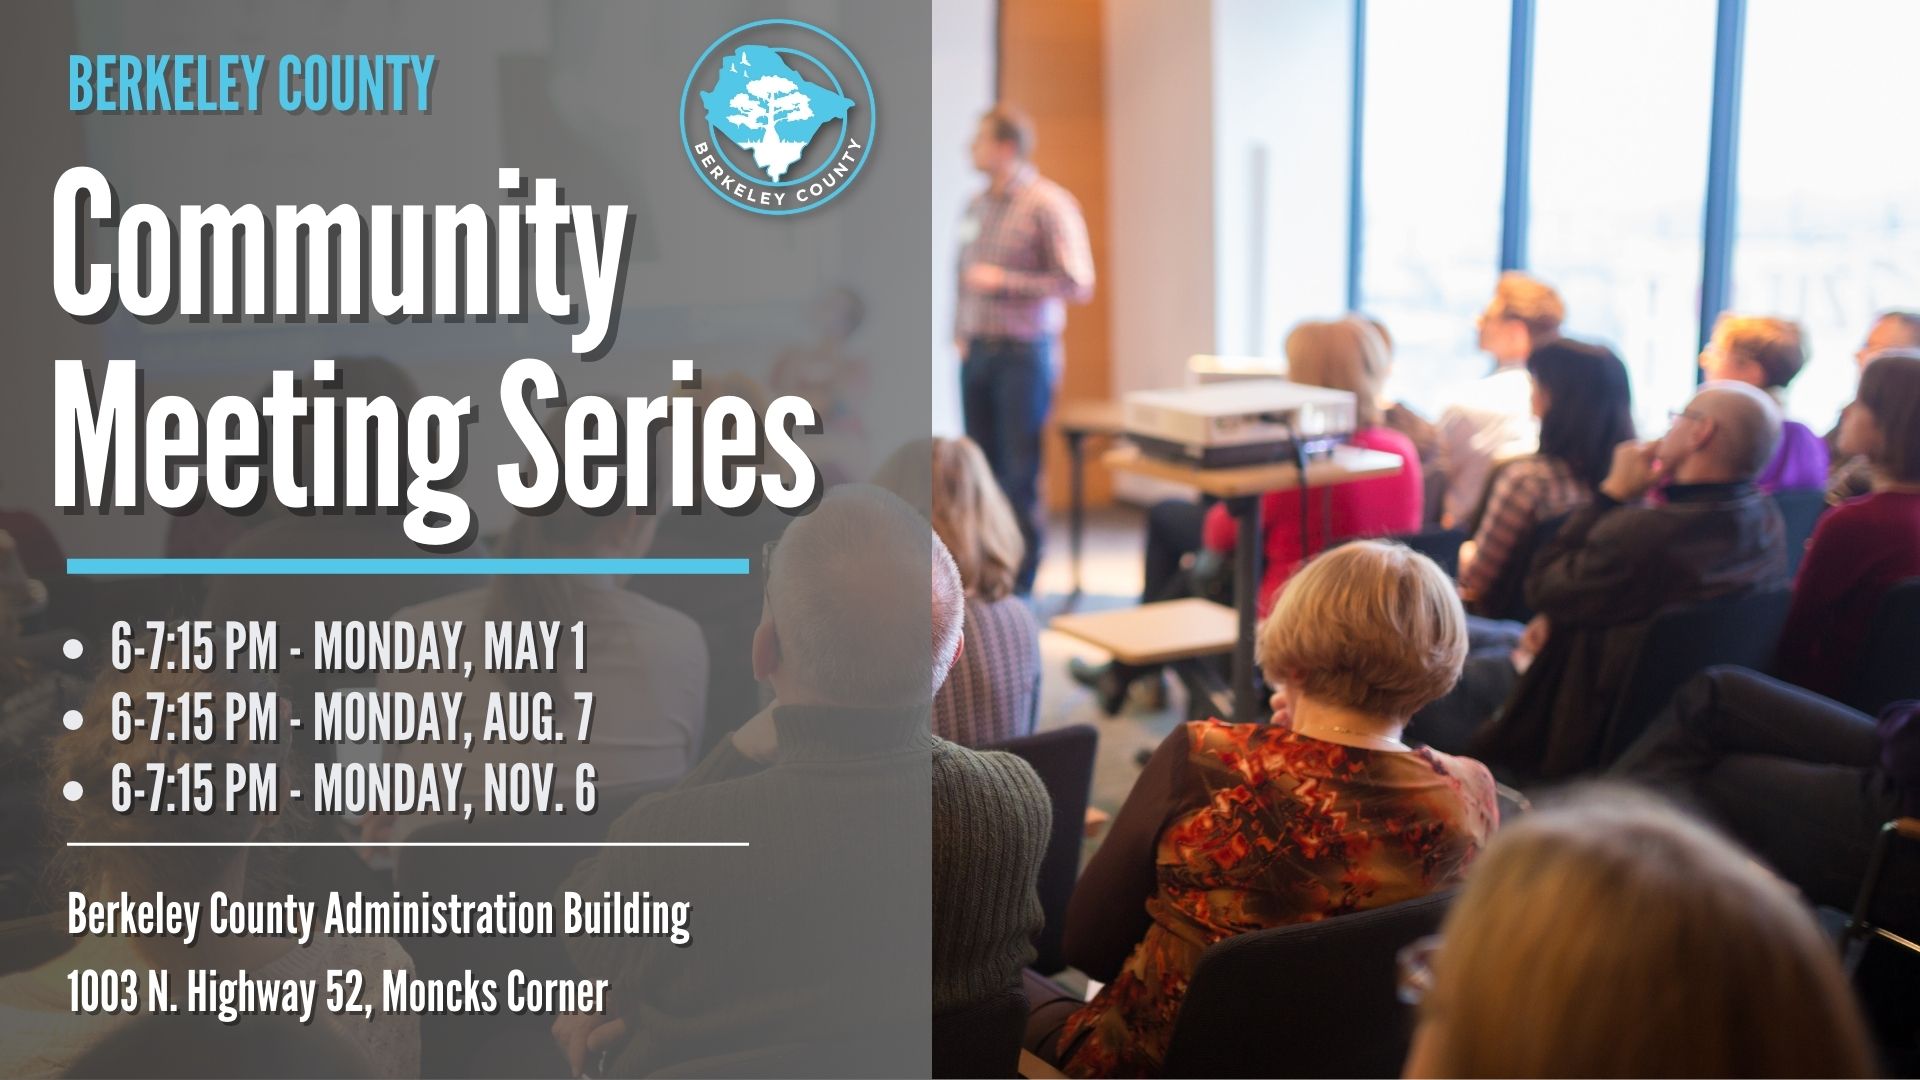 Berkeley County Hosting Series of Upcoming Community Meetings